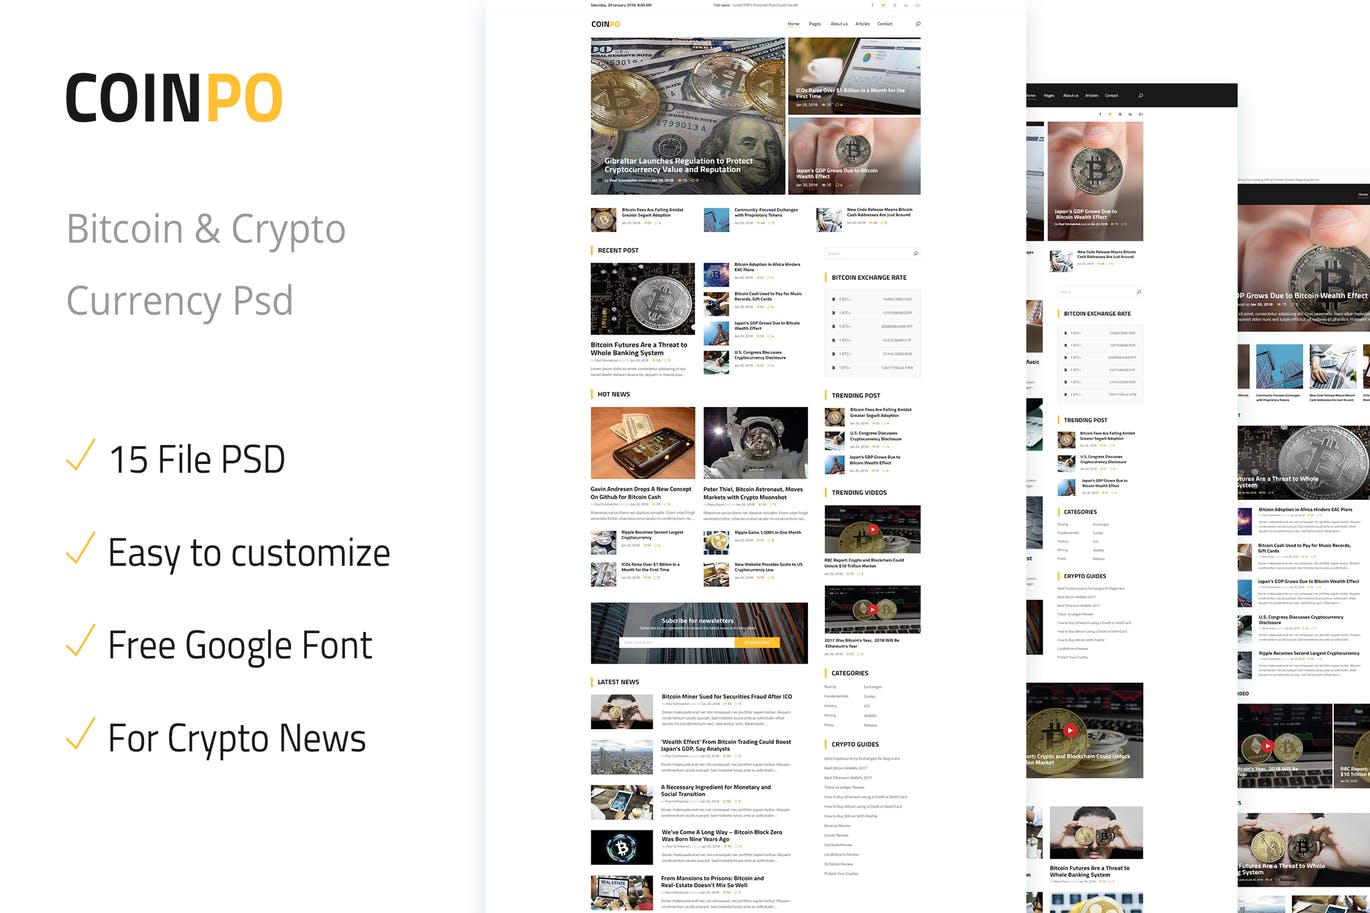 比特币/加密货币主题网站设计PSD模板 Coinpo | Bitcoin & Crypto Currency PSD Template插图